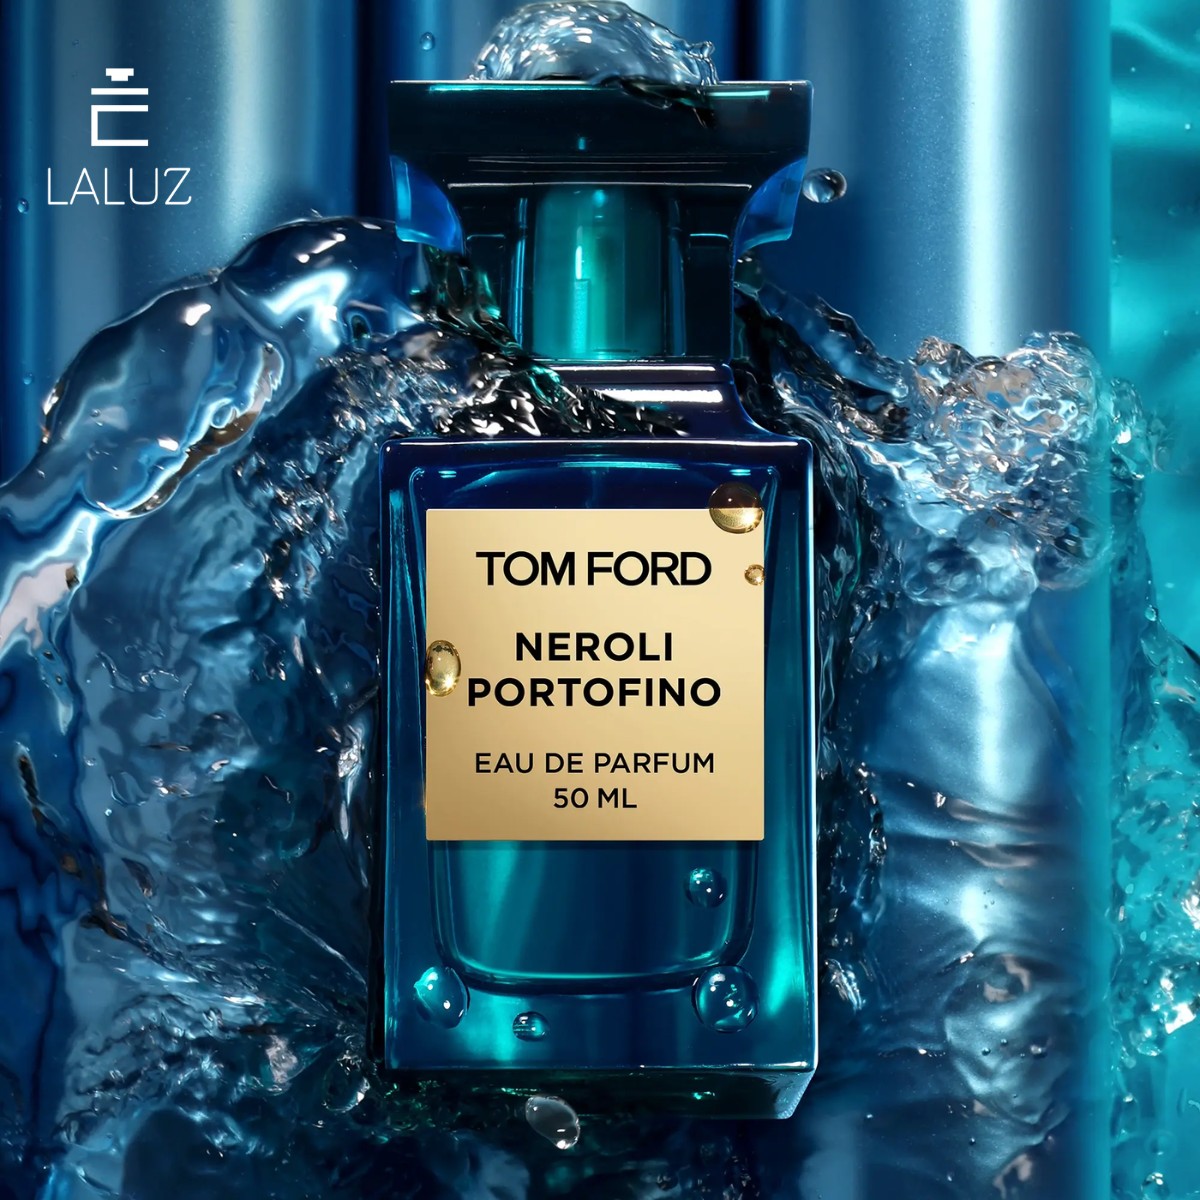 Nước hoa Tom Ford Neroli Portofino EDP mang hương cam chanh thơm ngát rất thích hợp cho mùi hè